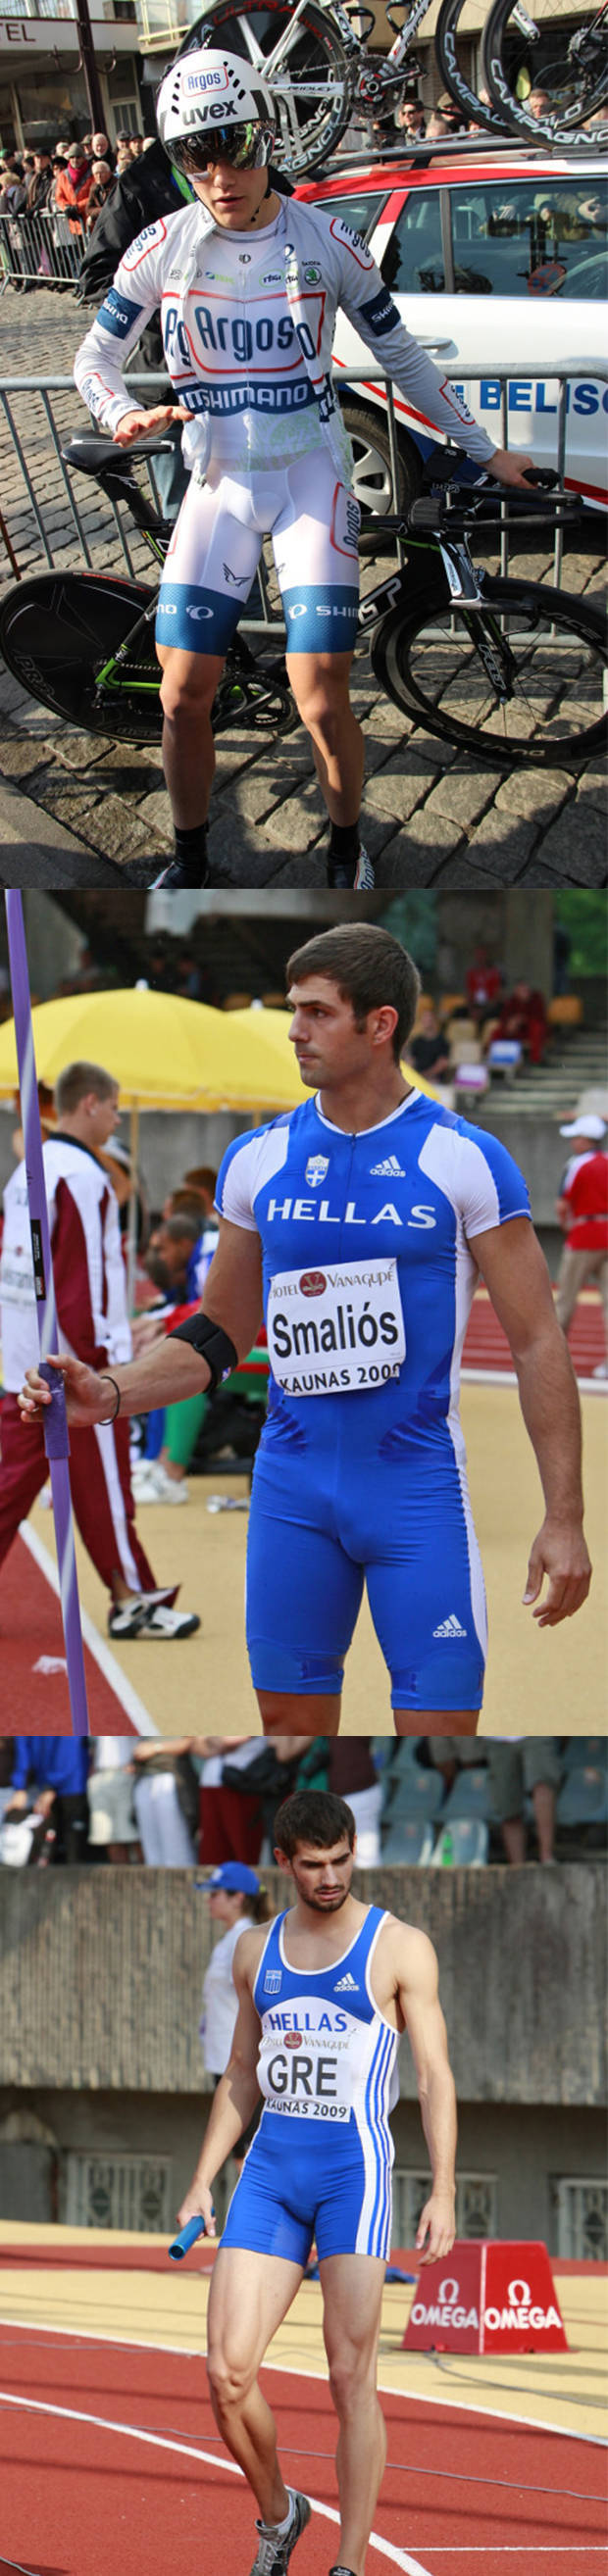 sport athletes bulges visible penis line